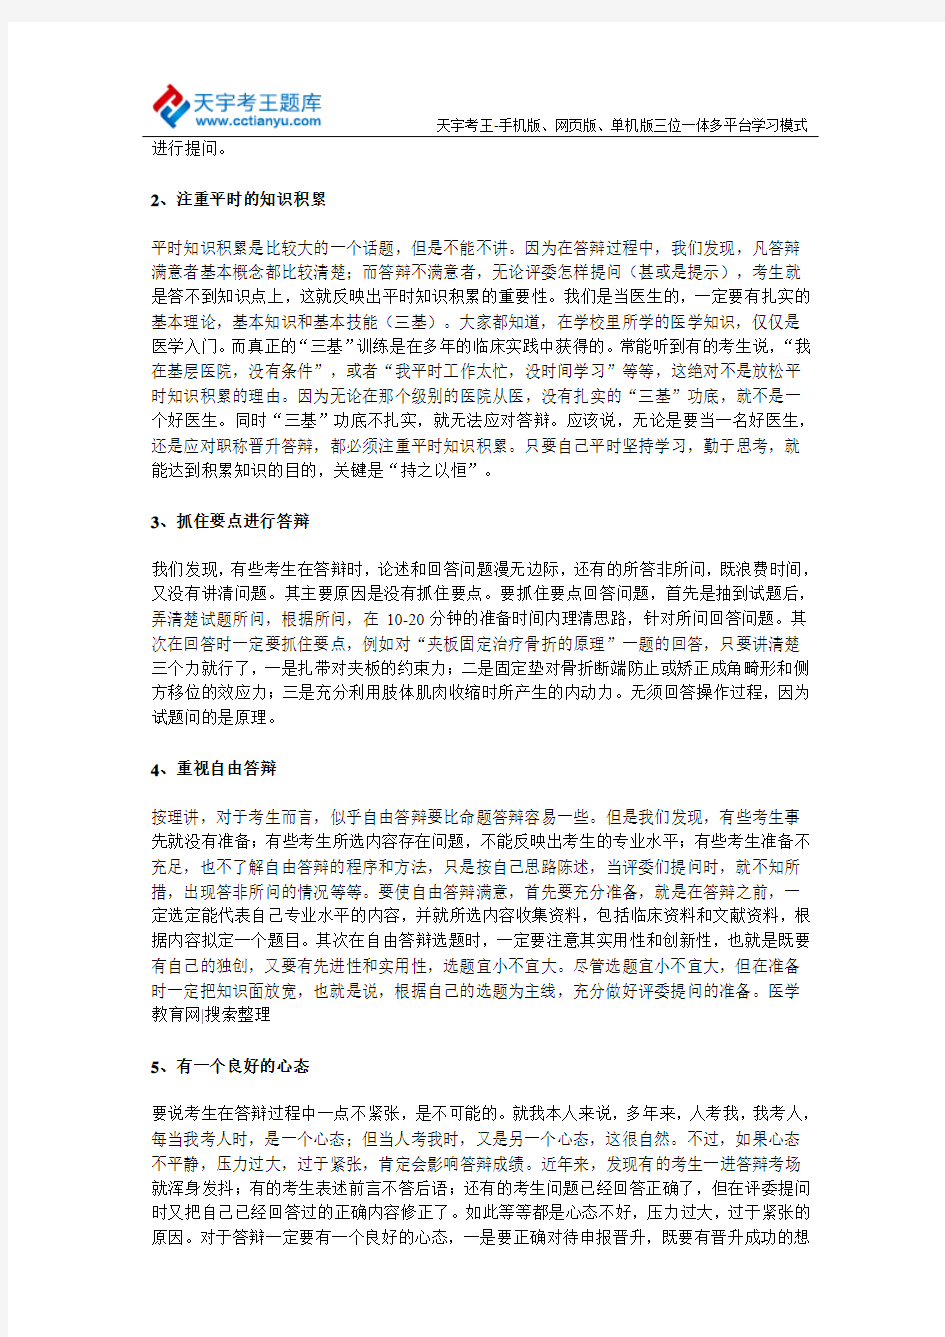 陕西省2015年医学卫生高级职称答辩事项汇总说明